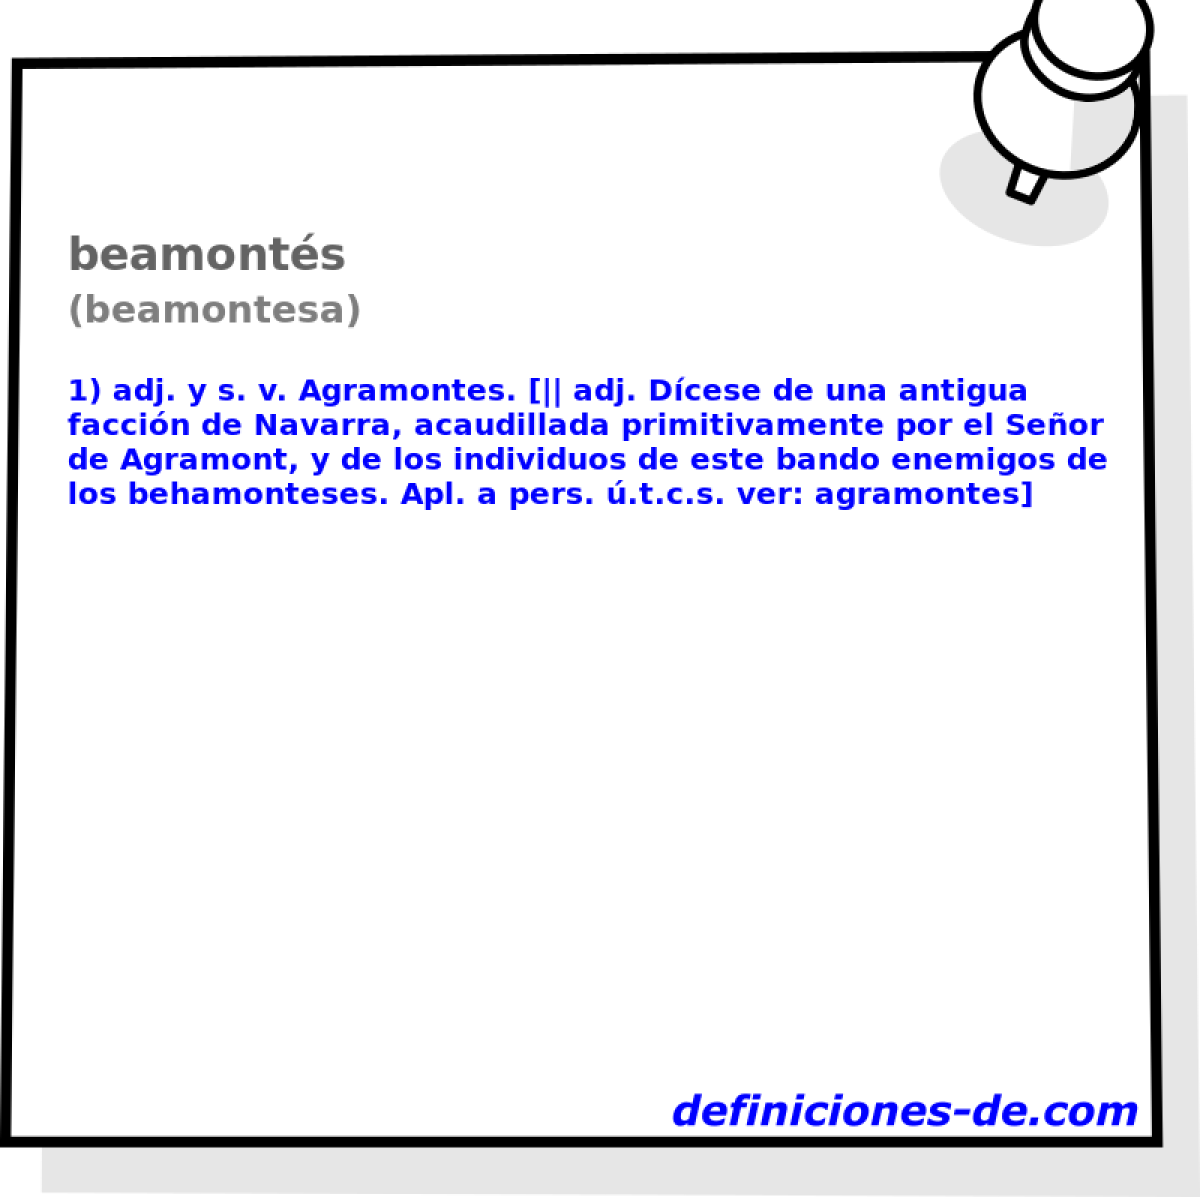 beamonts (beamontesa)